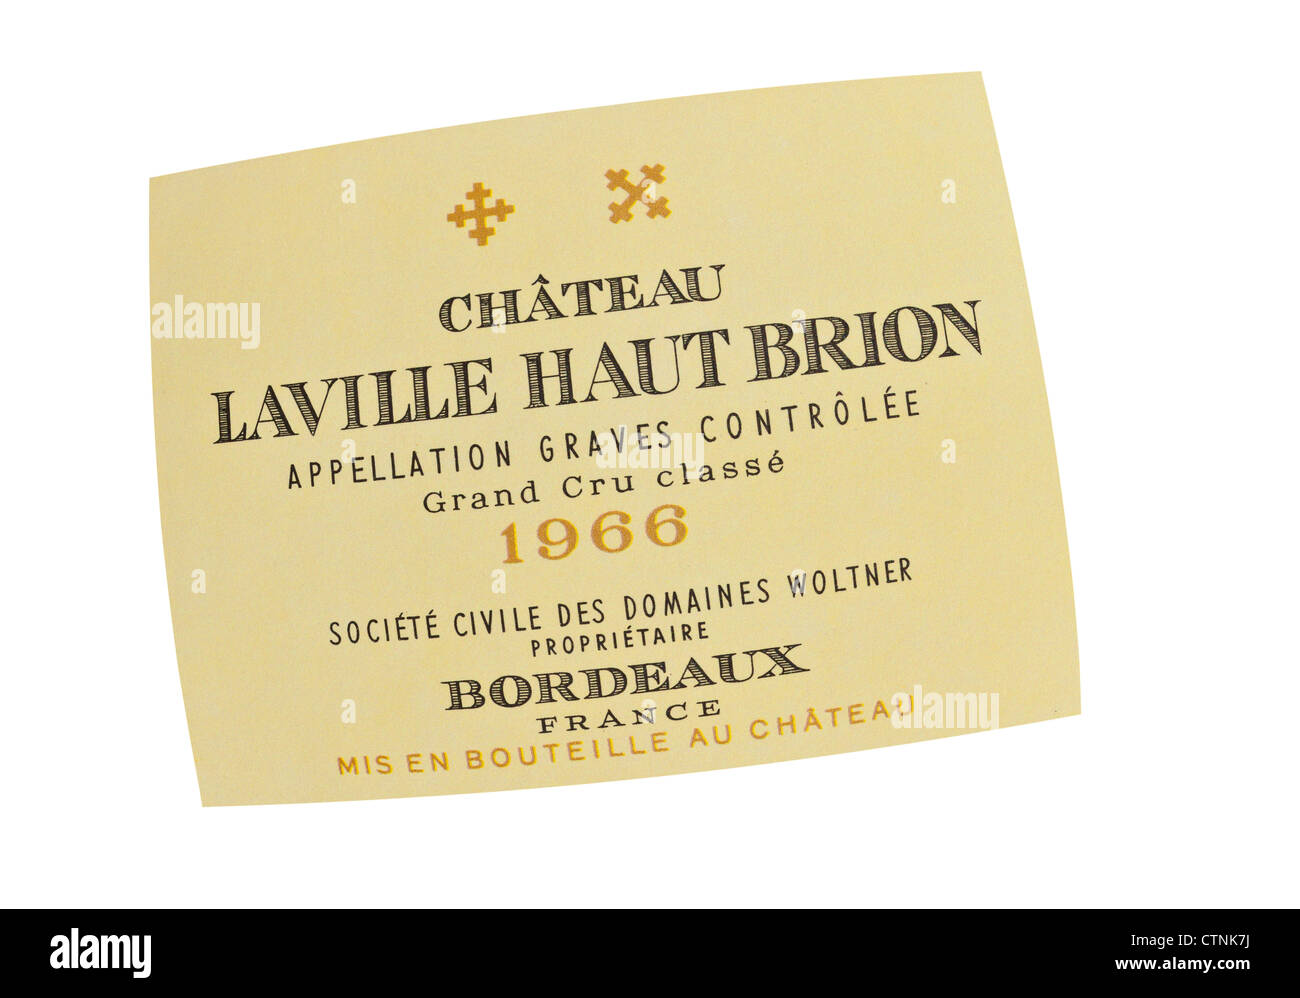 Etichetta del 1966 Chateau Laville Haut Brion Grand Cru classe vino bianco Graves Bordeaux Francia Foto Stock